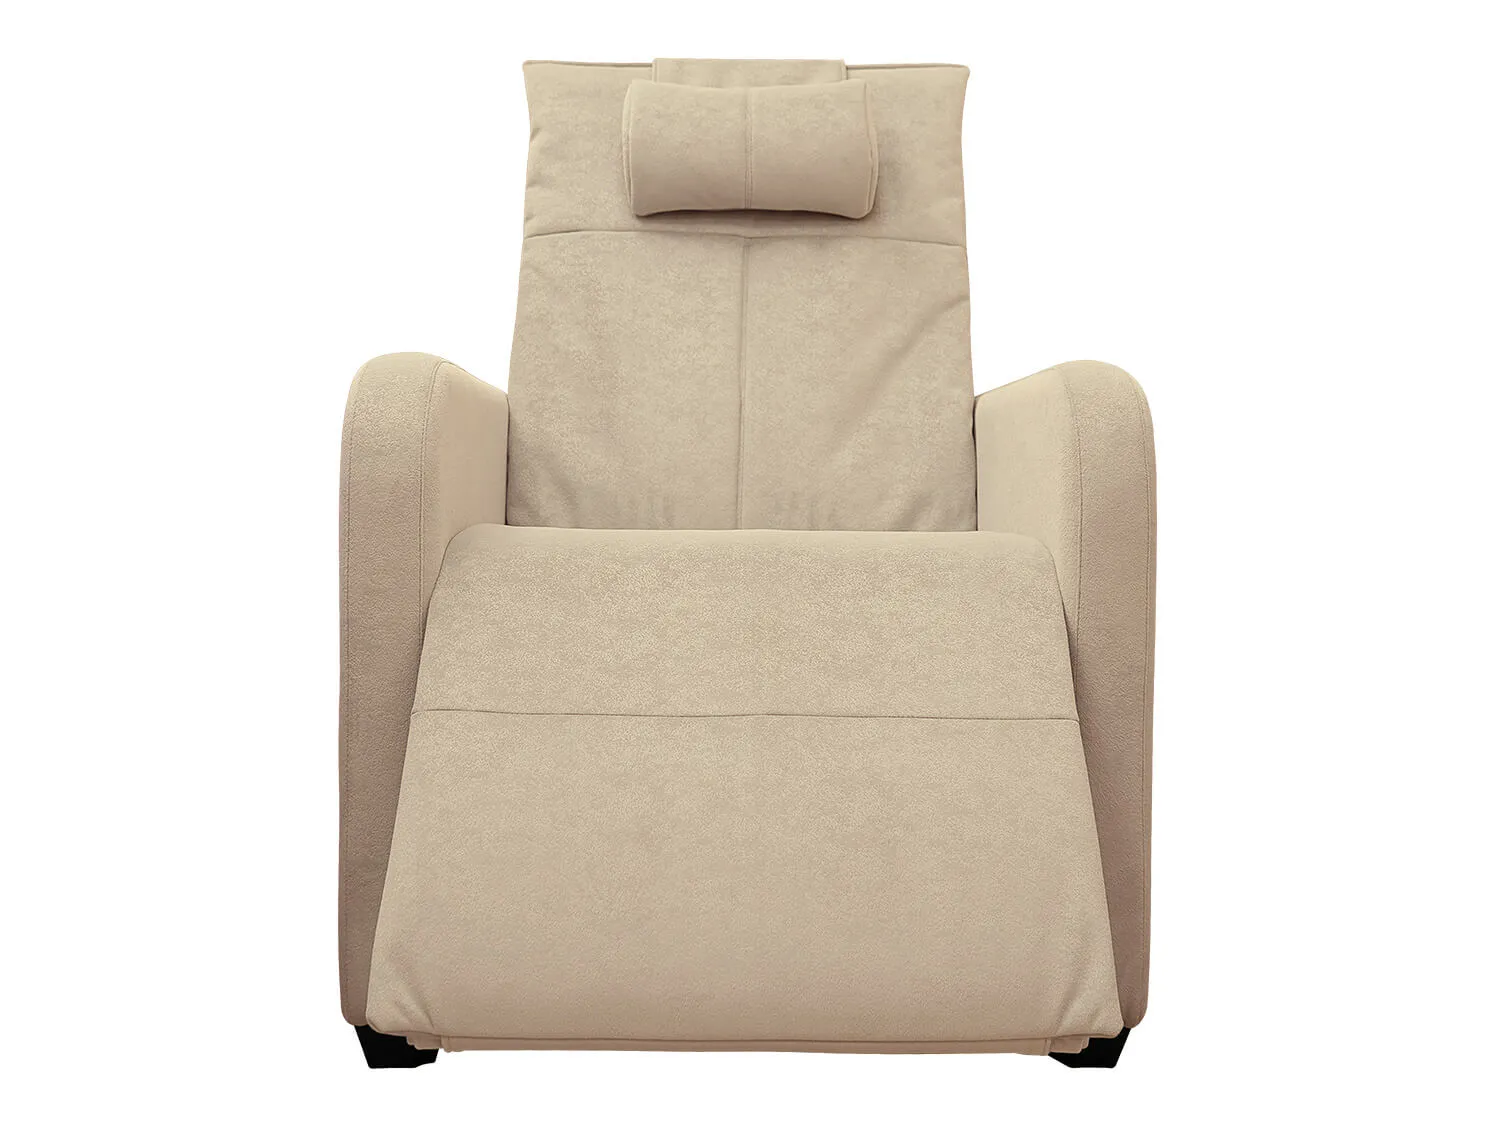 Кресло реклайнер с подъемом FUJIMO LIFT CHAIR F3005 FLWL цвет на заказ